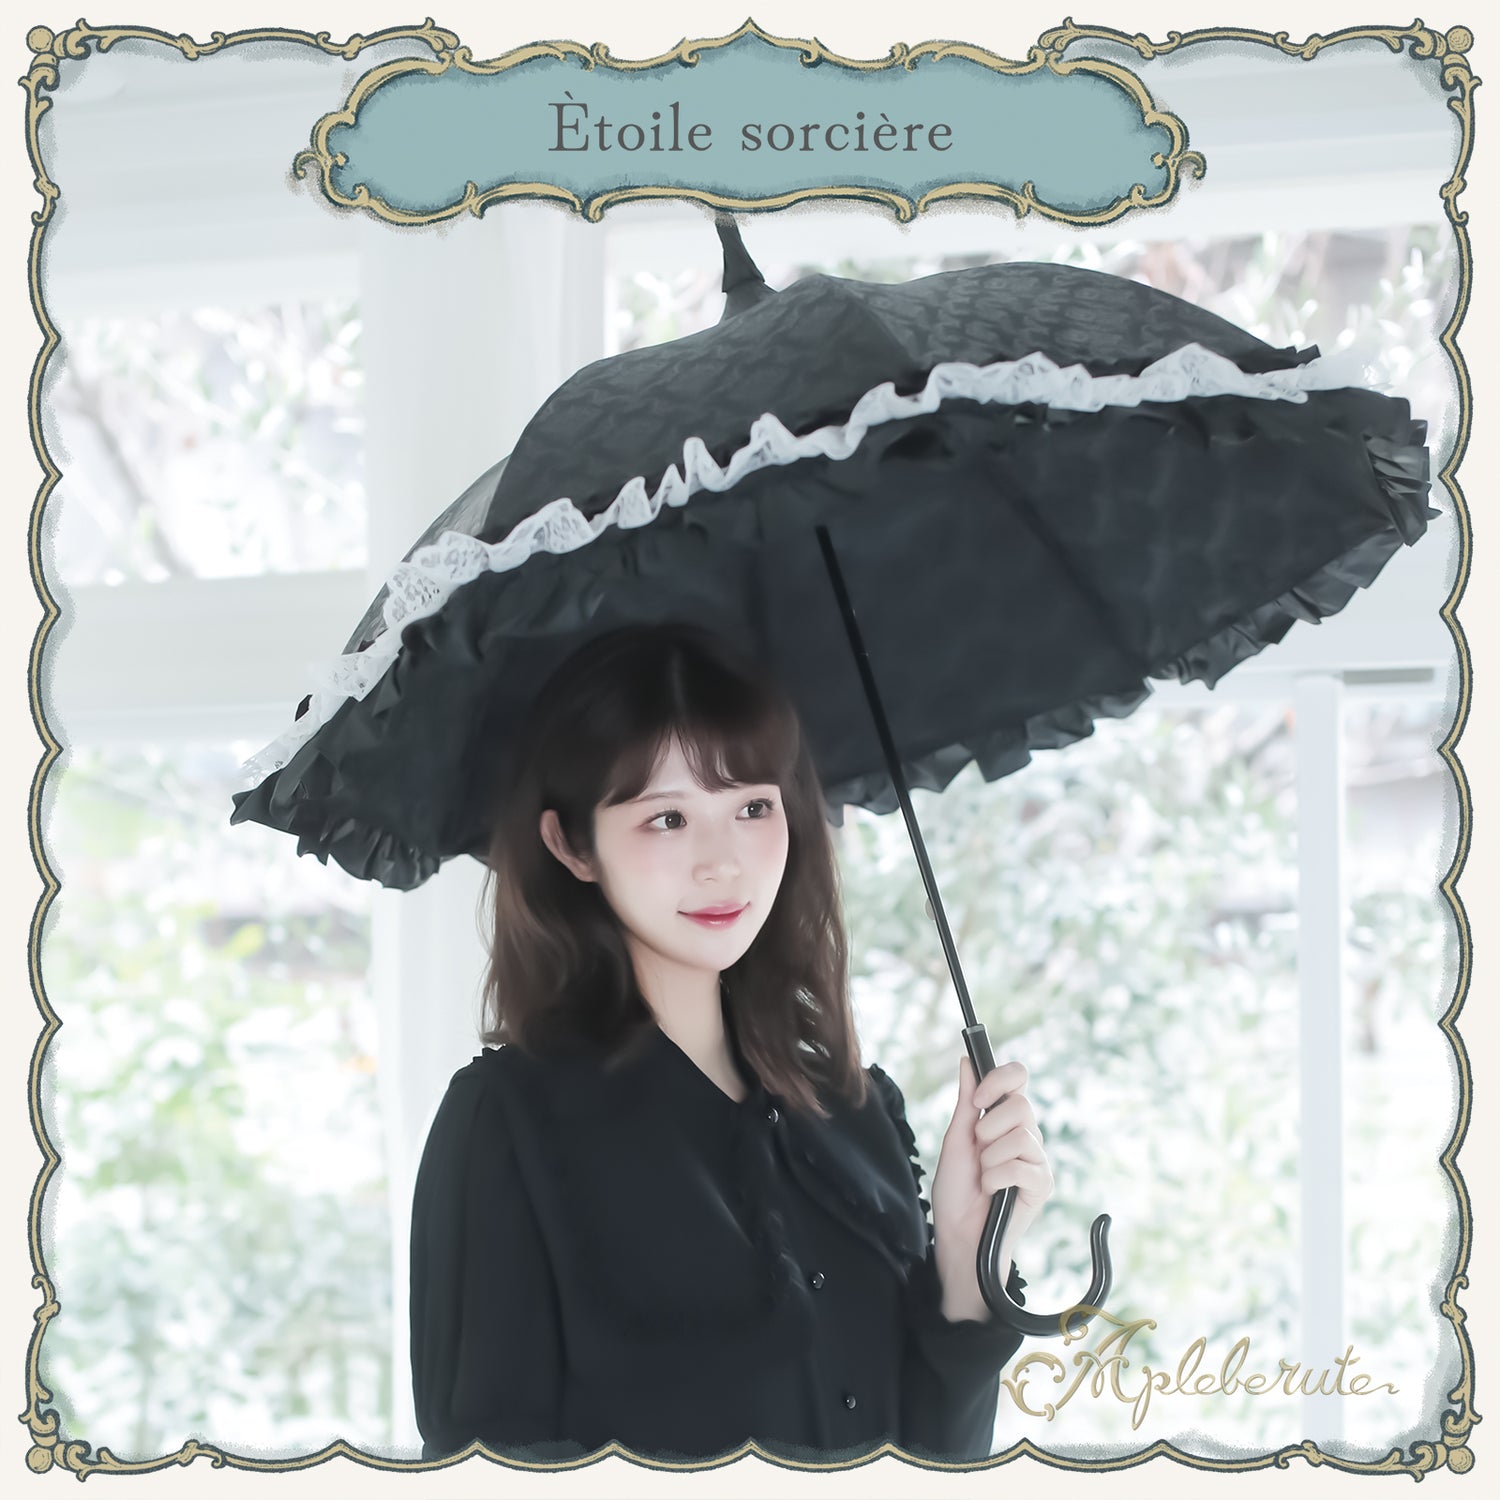 【New】étoile-sorcière (エトワールソルシエール) - パゴダ 1級遮光 晴雨兼用 雨傘 UVカット ショート丈 フリル レース